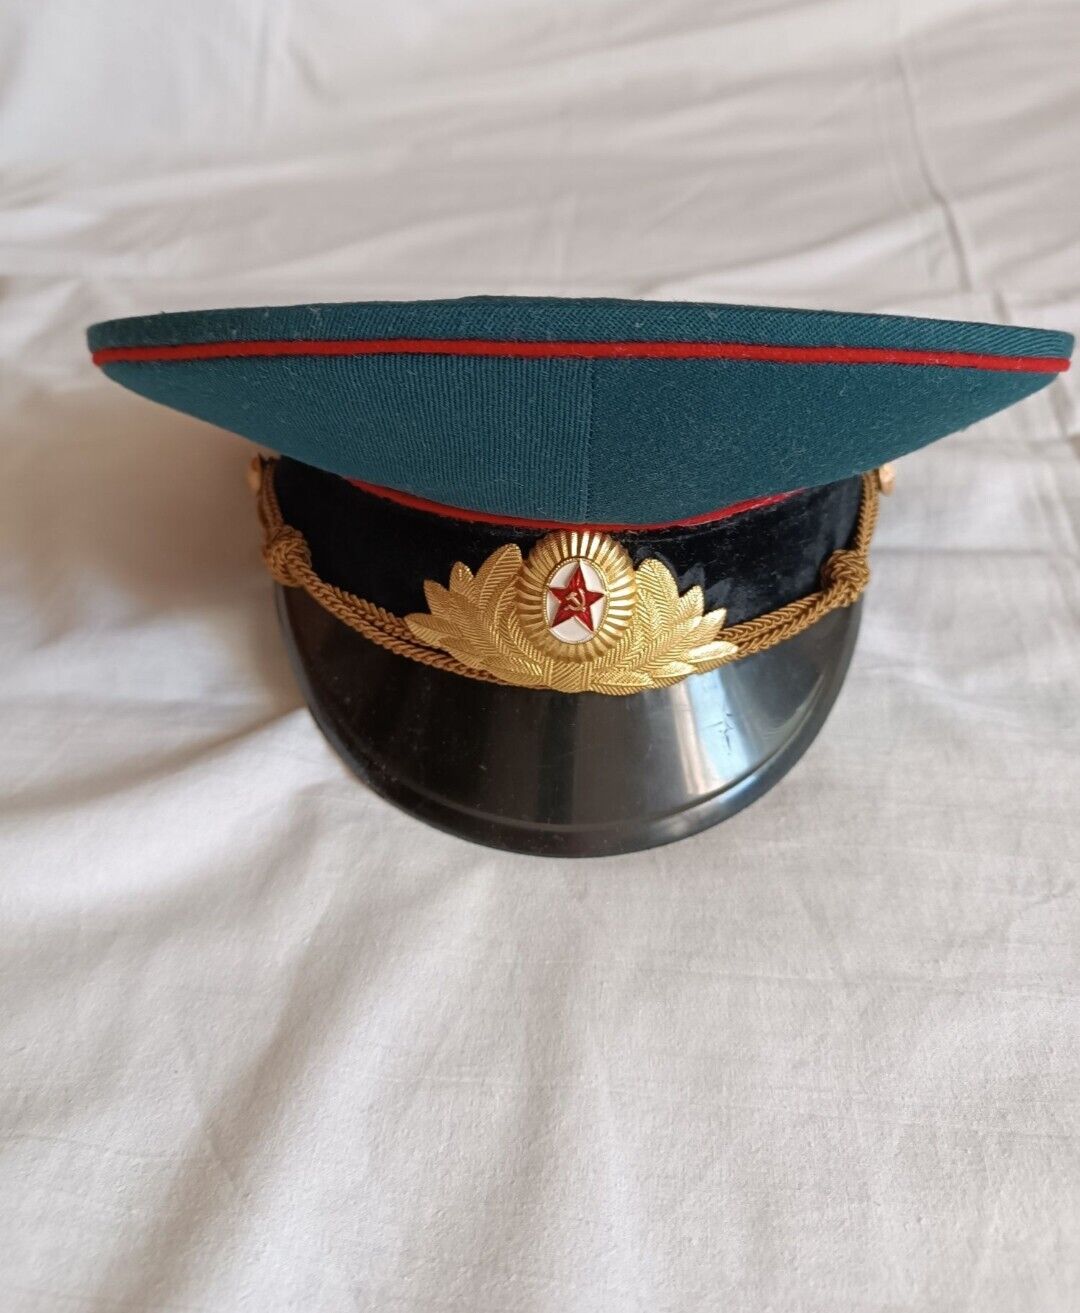 dress uniform officer's cap 1980